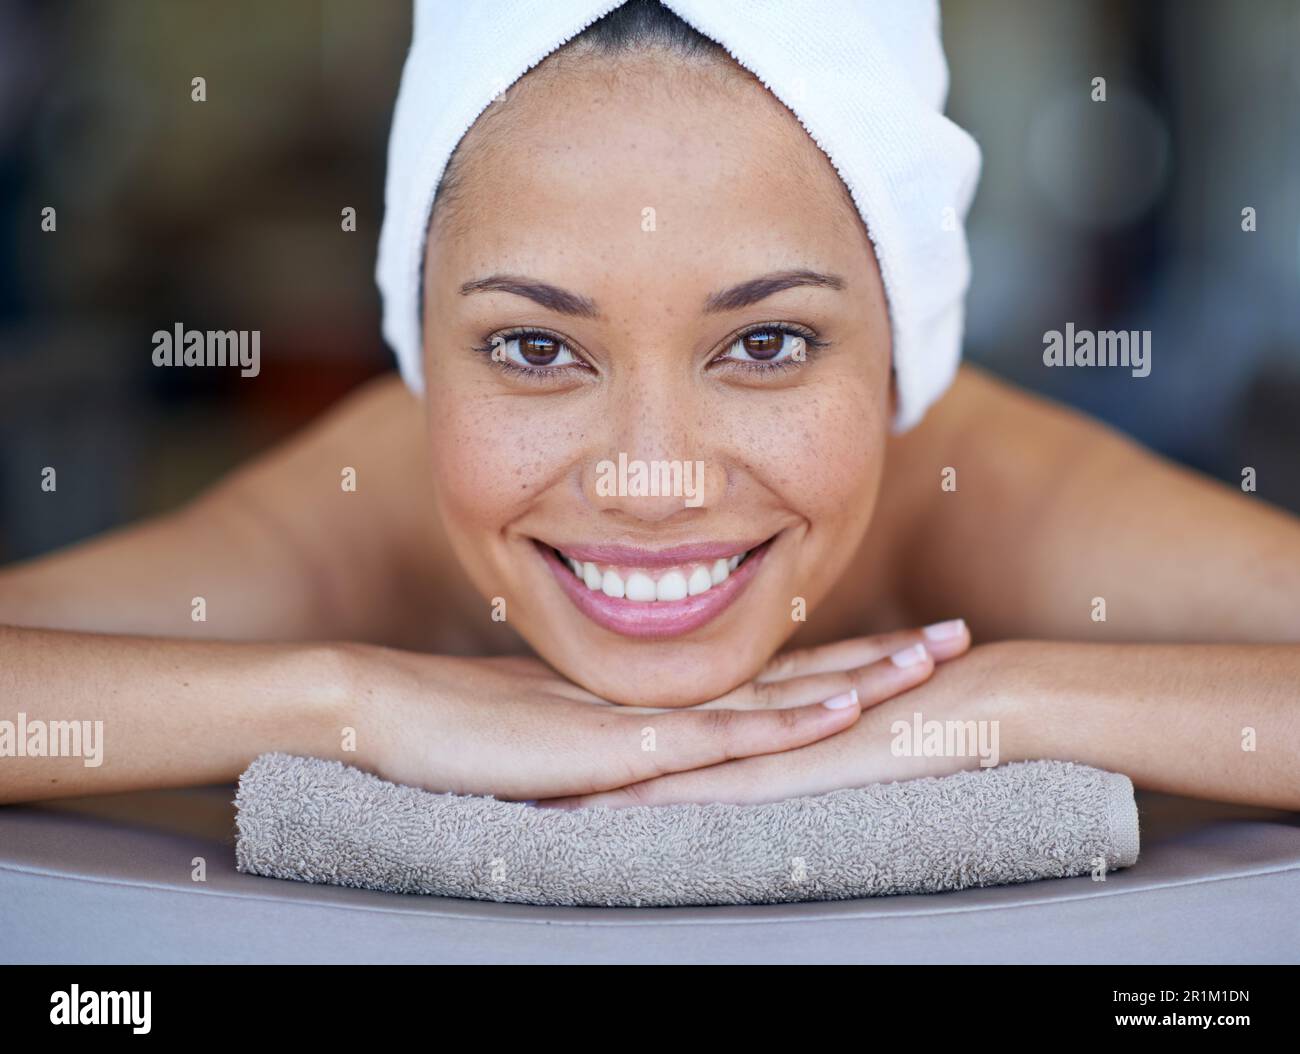 Komm mit mir auf eine Massage. Porträt einer jungen Frau, die auf einem Massagetisch liegt. Stockfoto